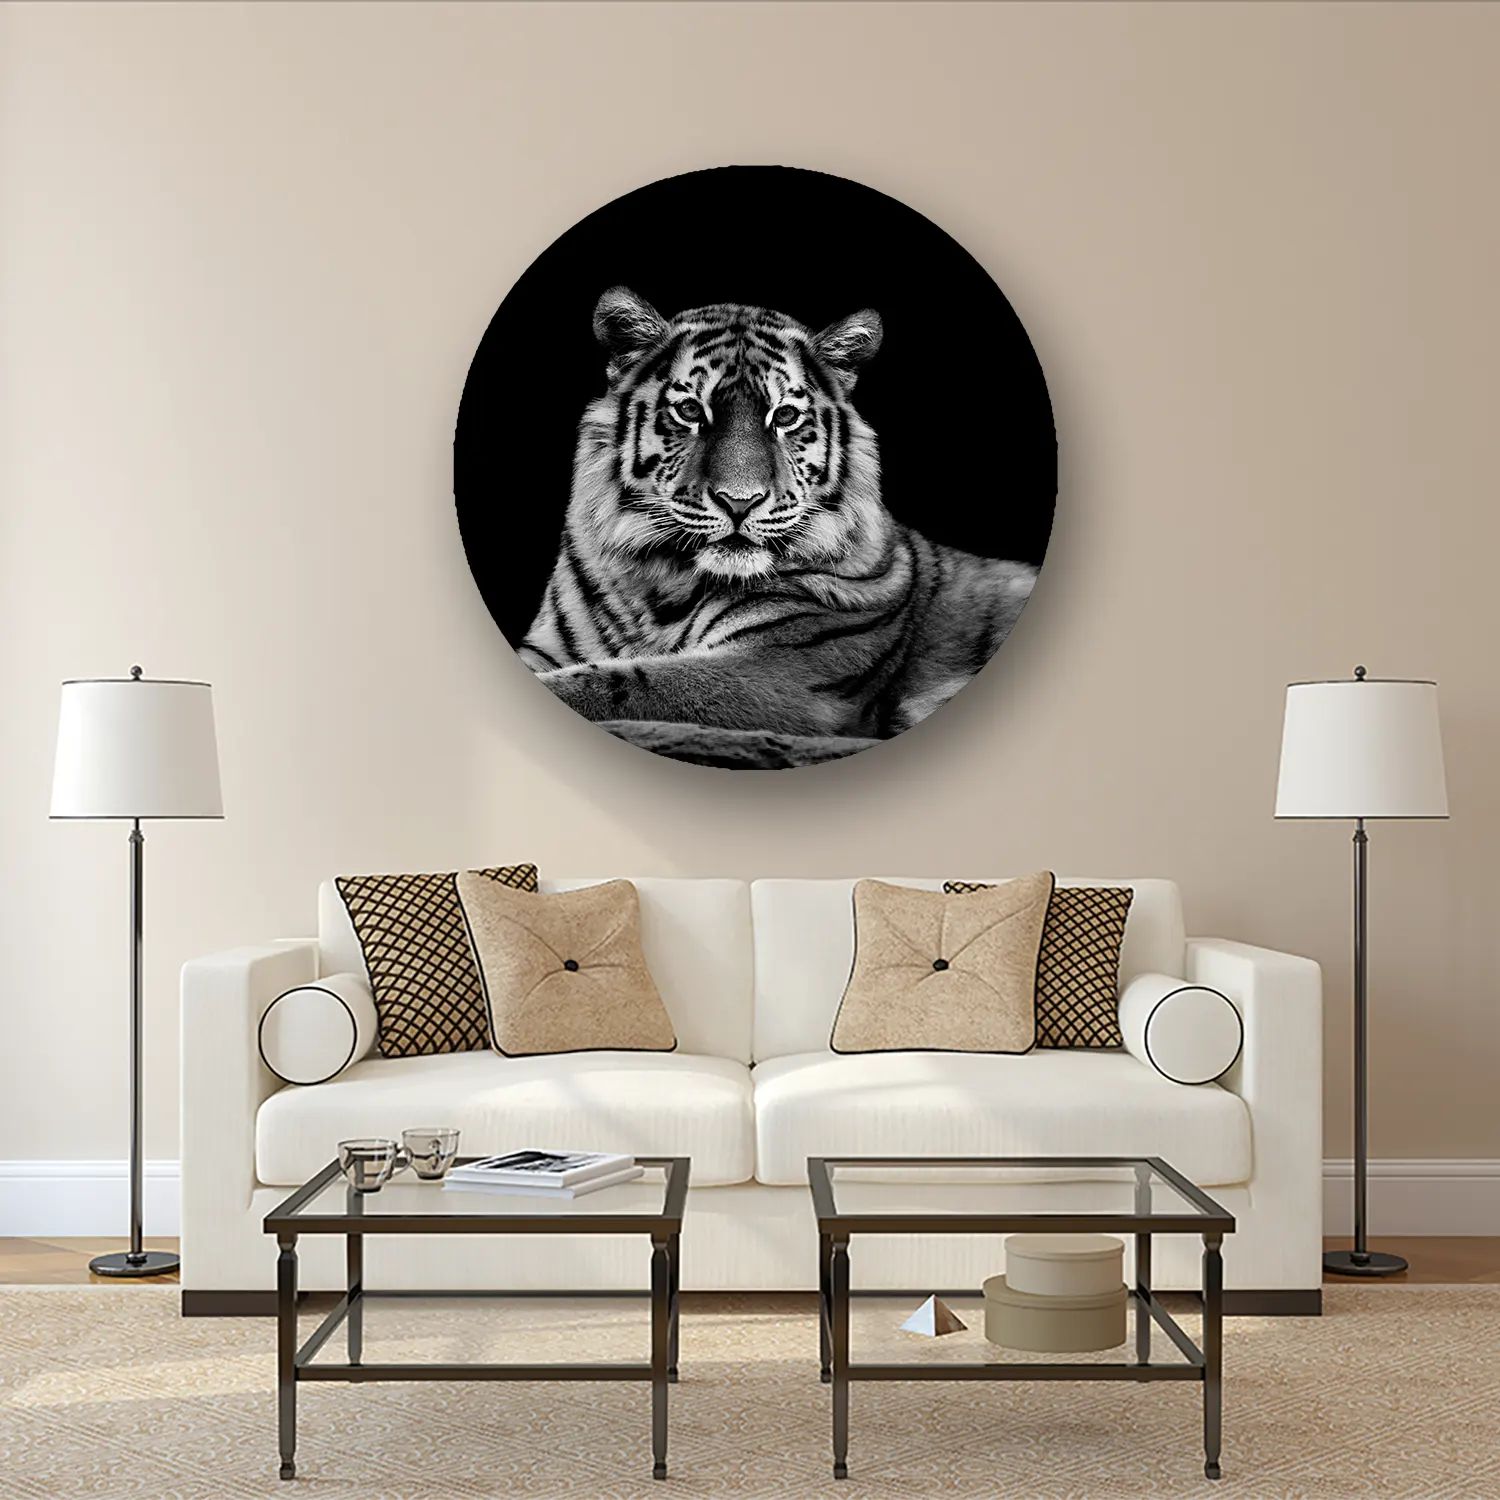 Size Variation 120x120 - The Tiger - Fotokunst Wandcirkel